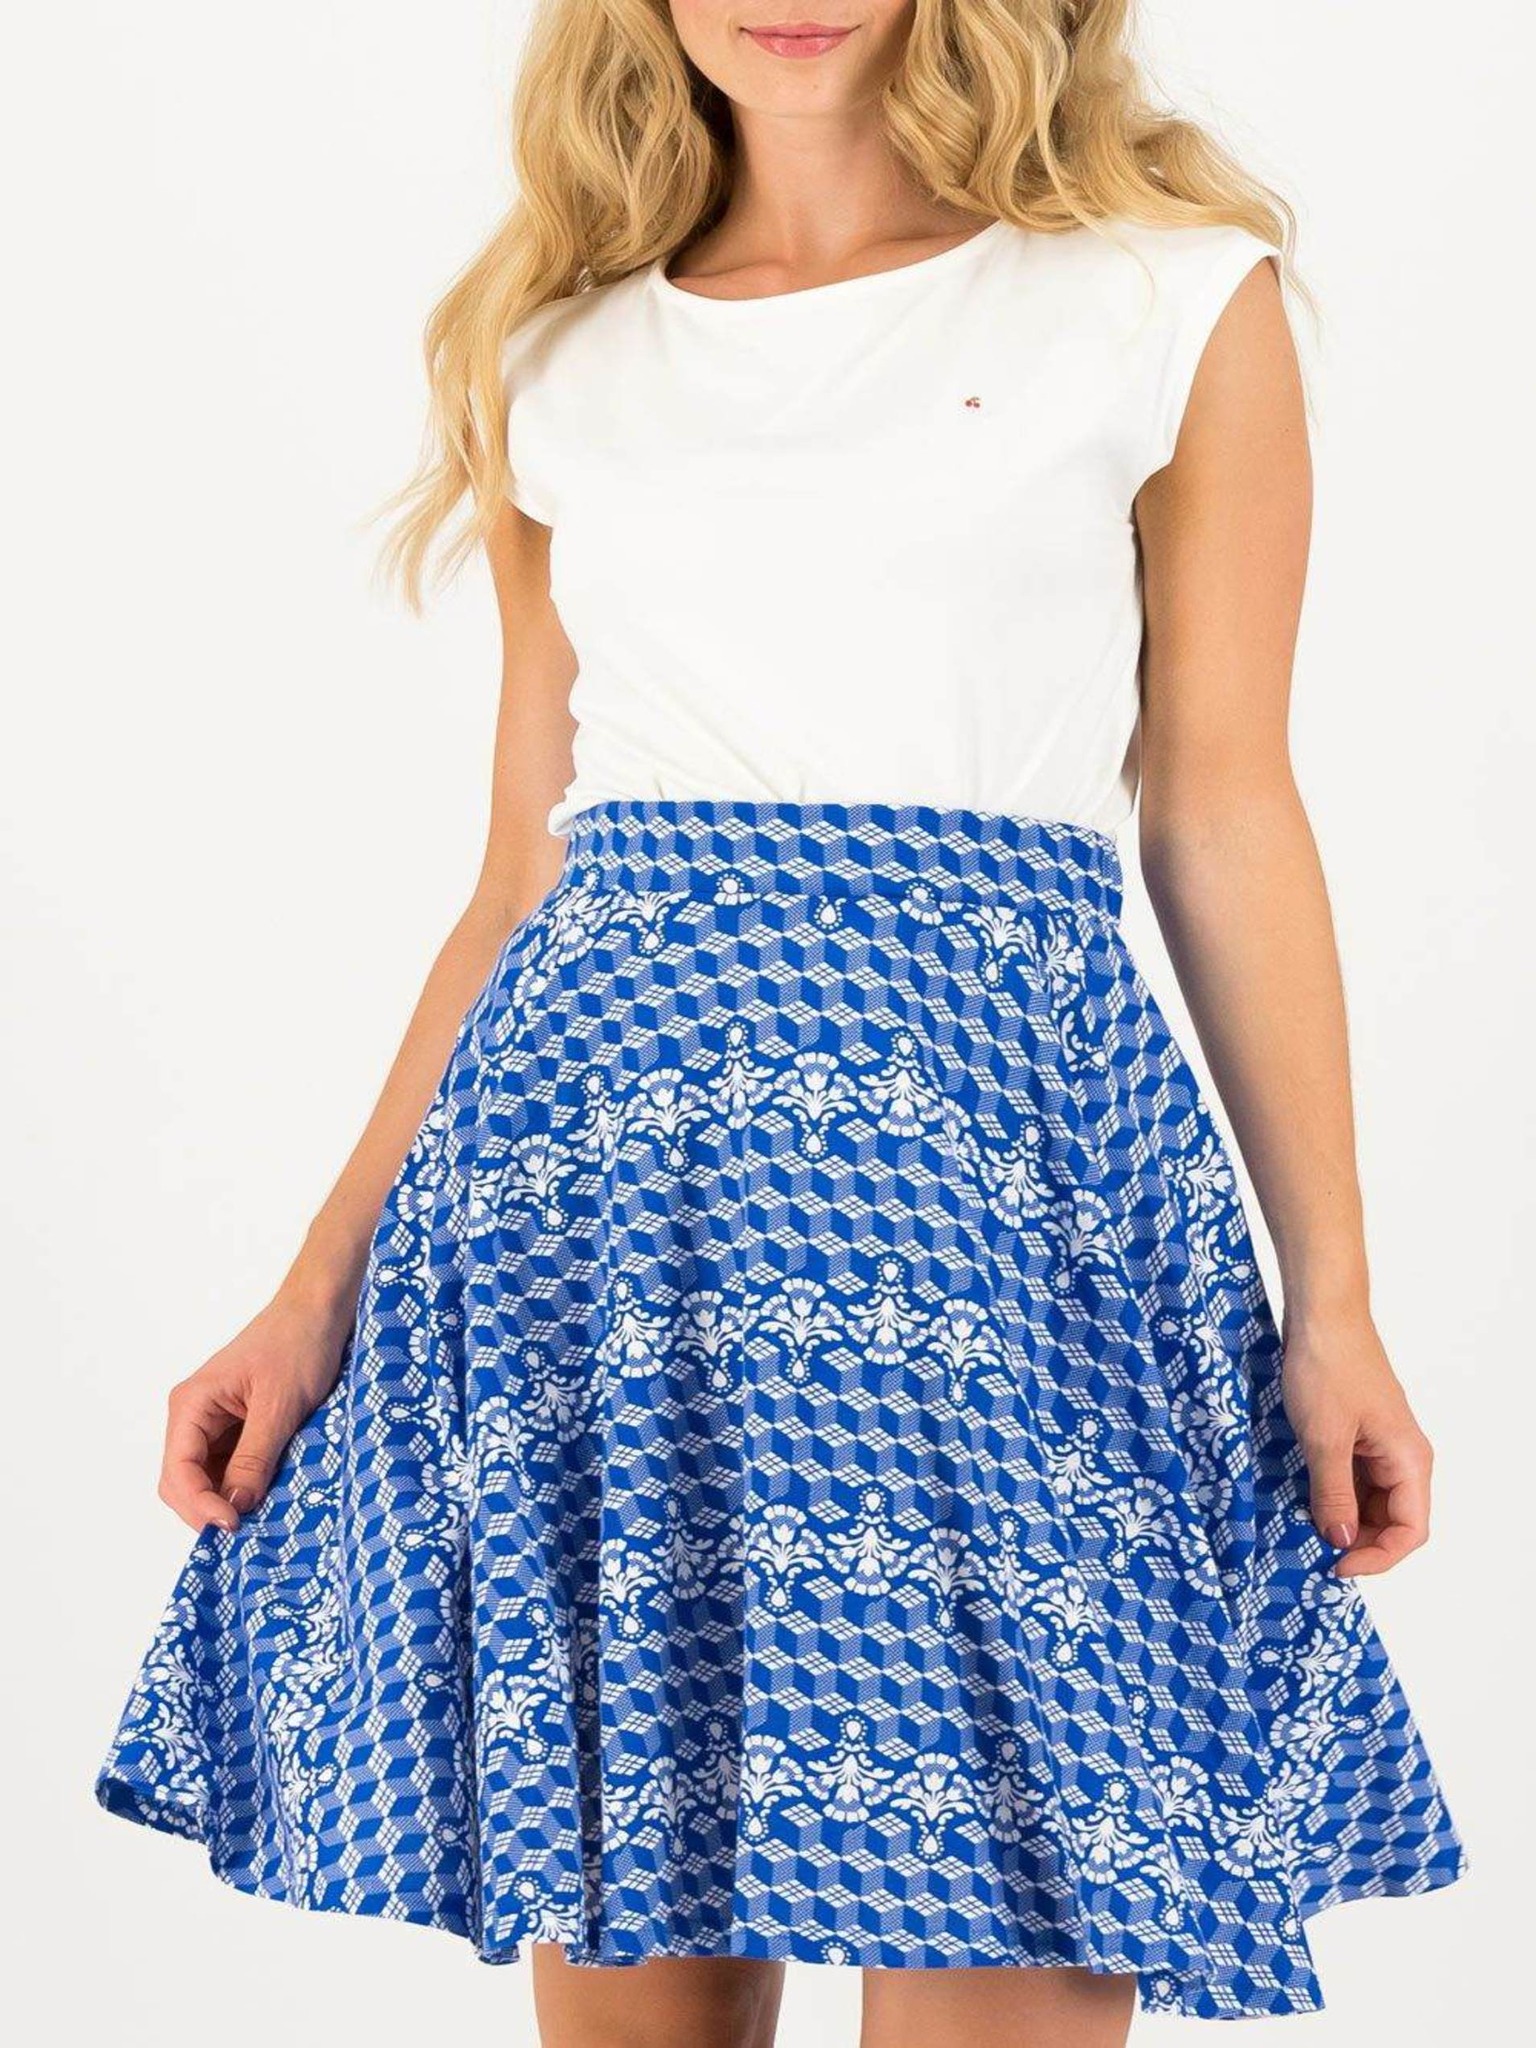 Fotografie Blutsgeschwister modré sukně Fullmoon Circle Skirt Zwaluw Zee - XL